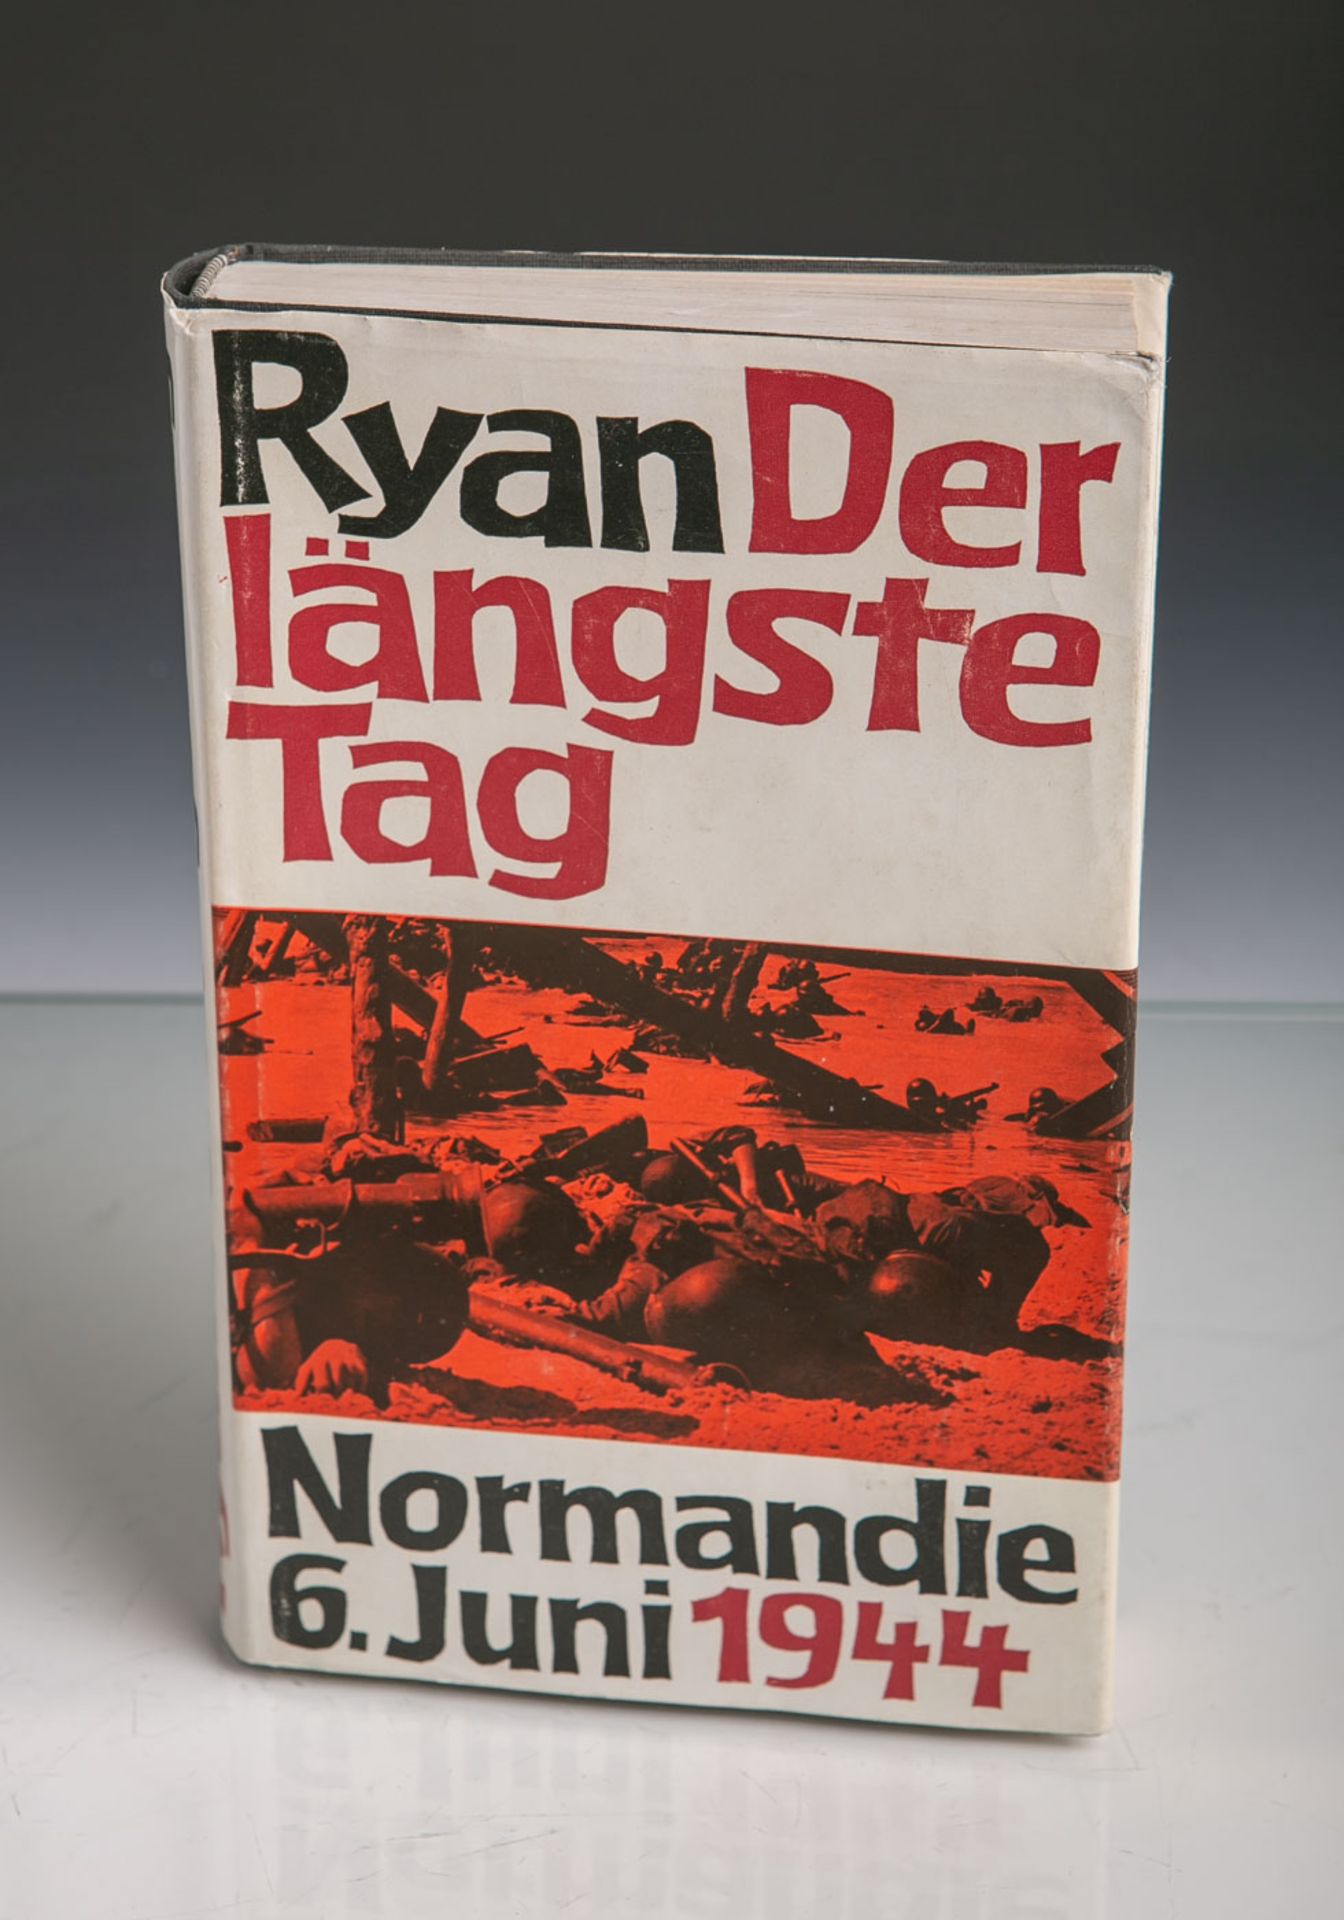 Ryan, Cornelius (Hrsg.), "Der längste Tag. Normandie: 6. Juni 1944", m. Abb., VerlagBertelsmann